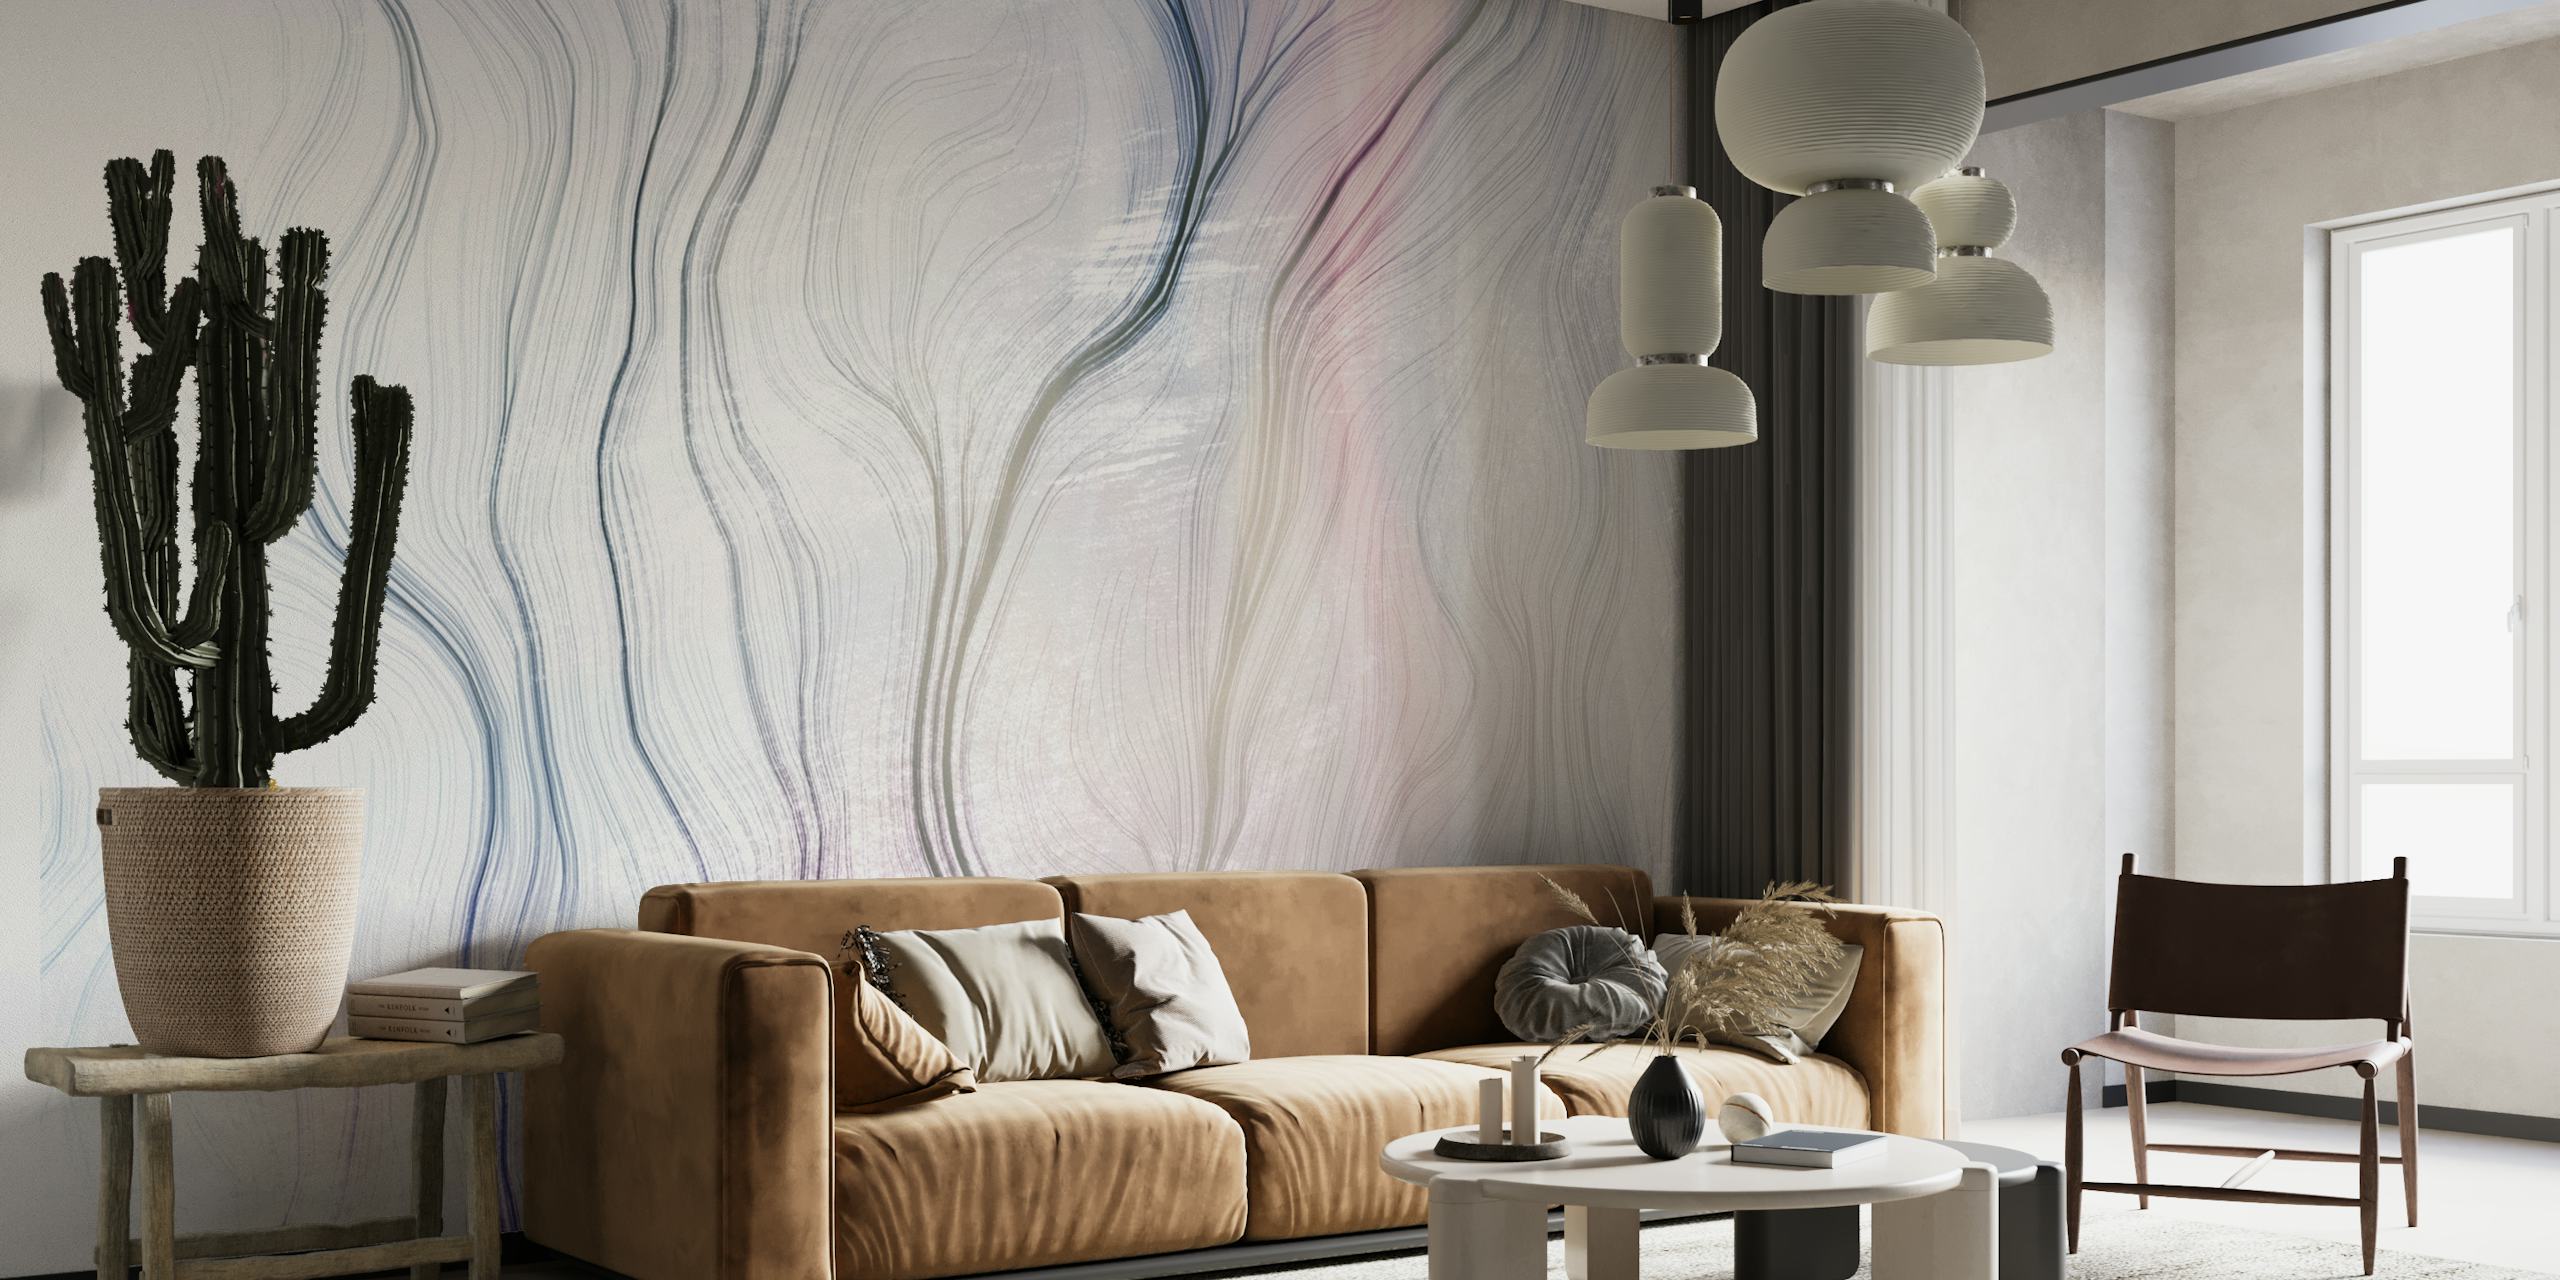 Abstrakt vægmaleri i pastellinjer 'Path 1' til fredfyldt værelsesindretning.